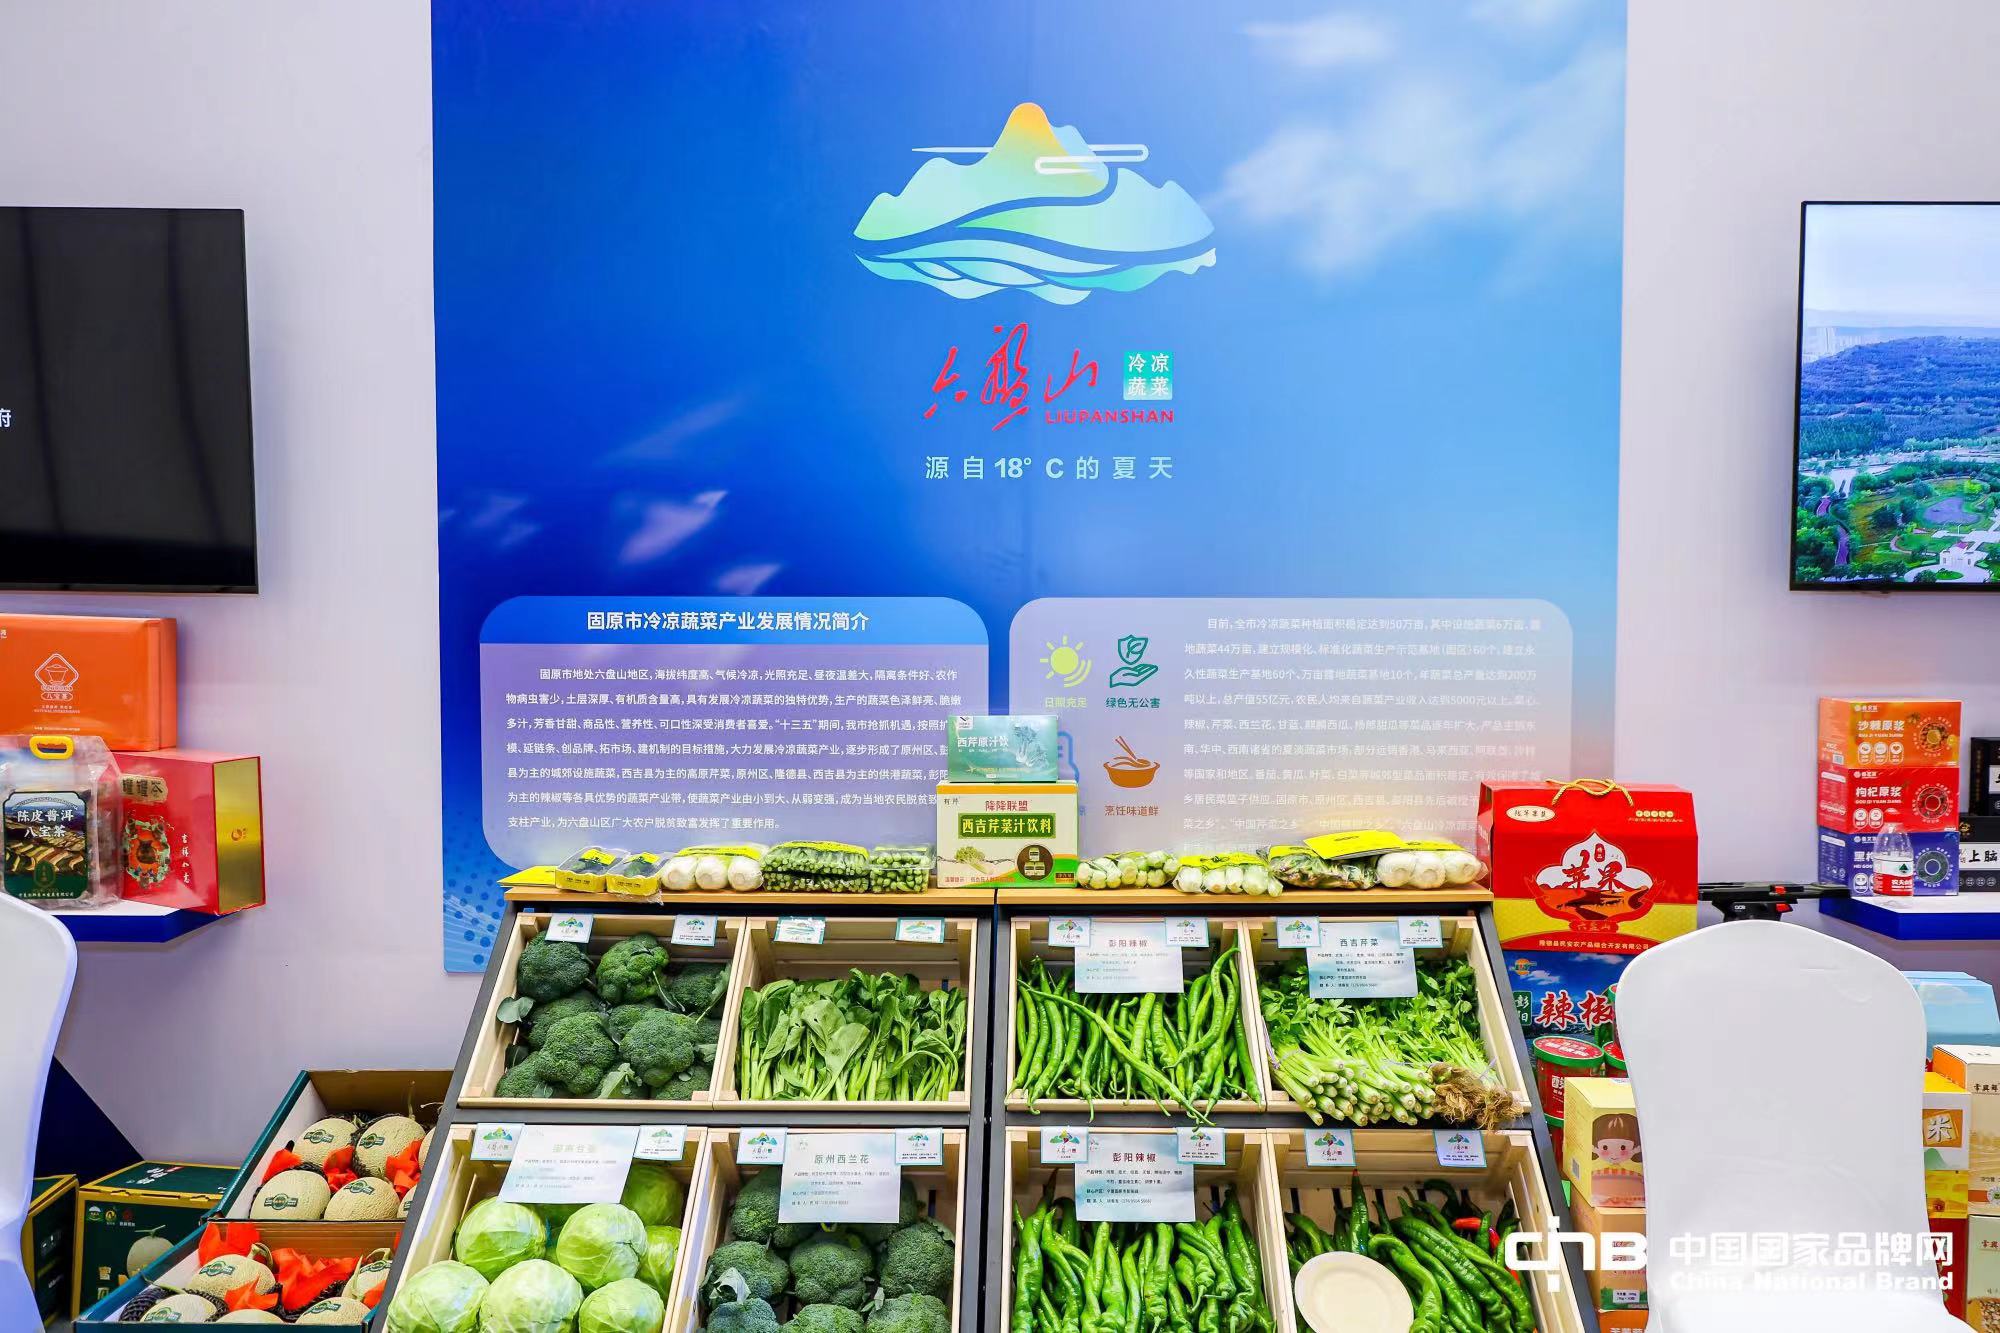 六盘山冷凉蔬菜亮相第八届“中国品牌日”